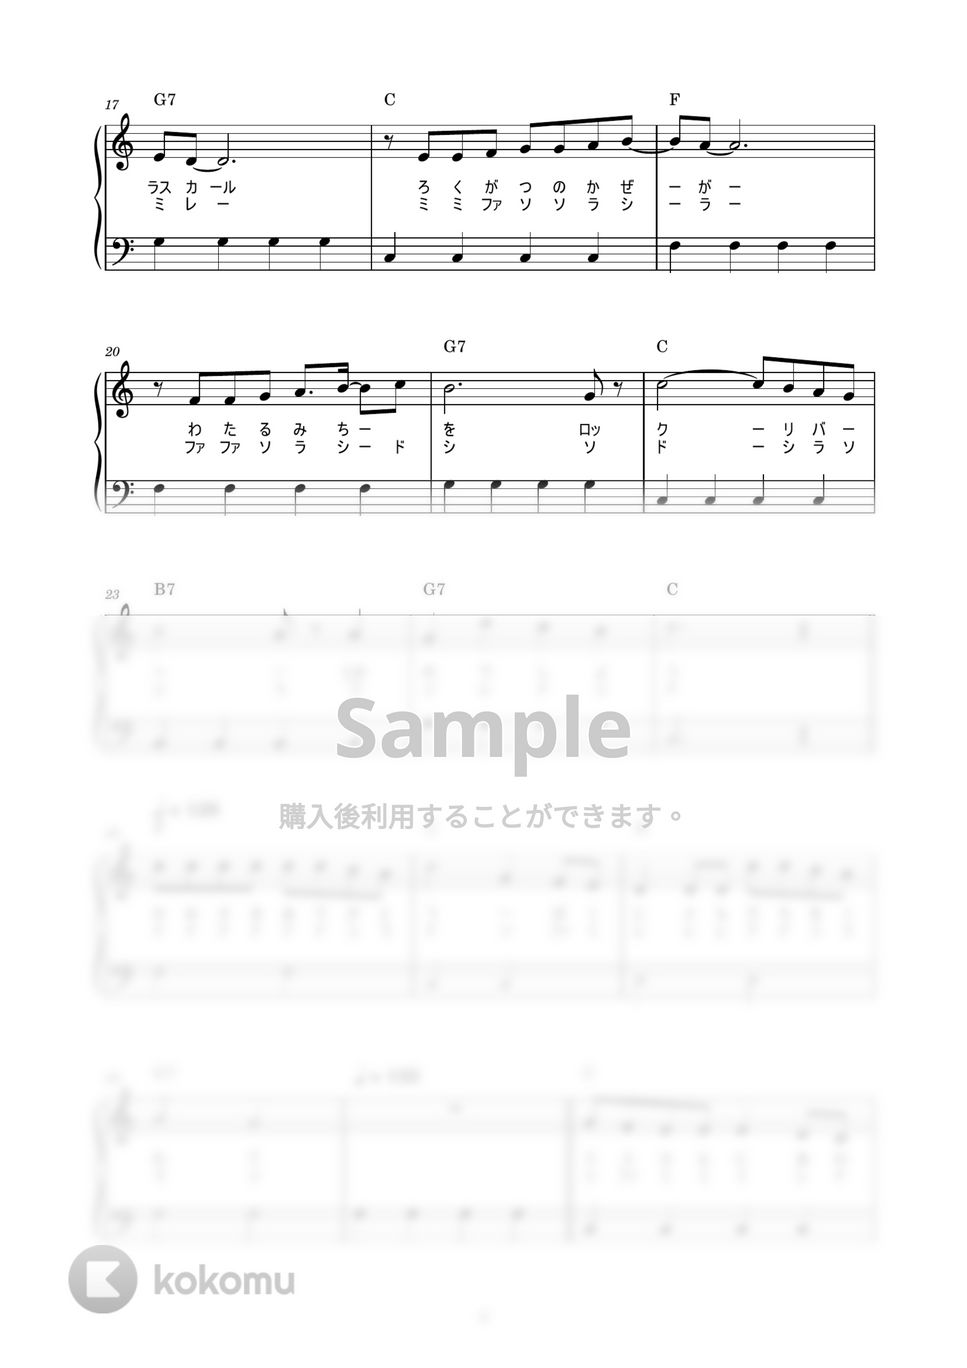 大杉久美子 - ロックリバーへ (かんたん / 歌詞付き / ドレミ付き / 初心者) by piano.tokyo